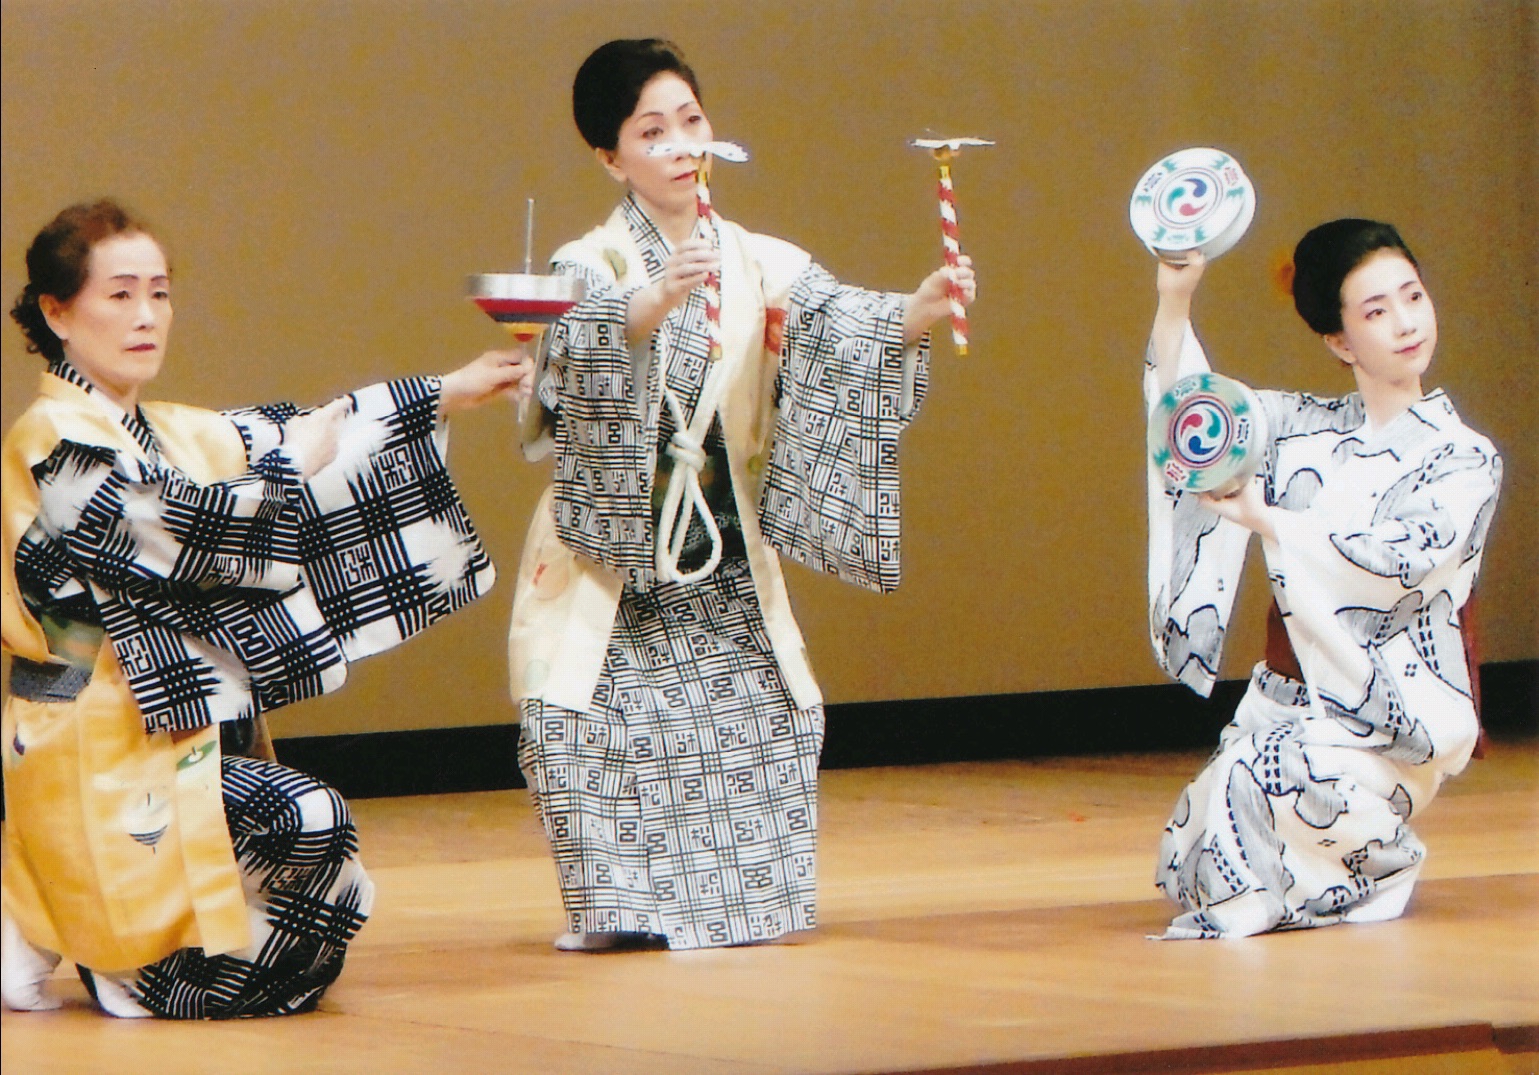 日本舞踊小道具、晒し布 - その他